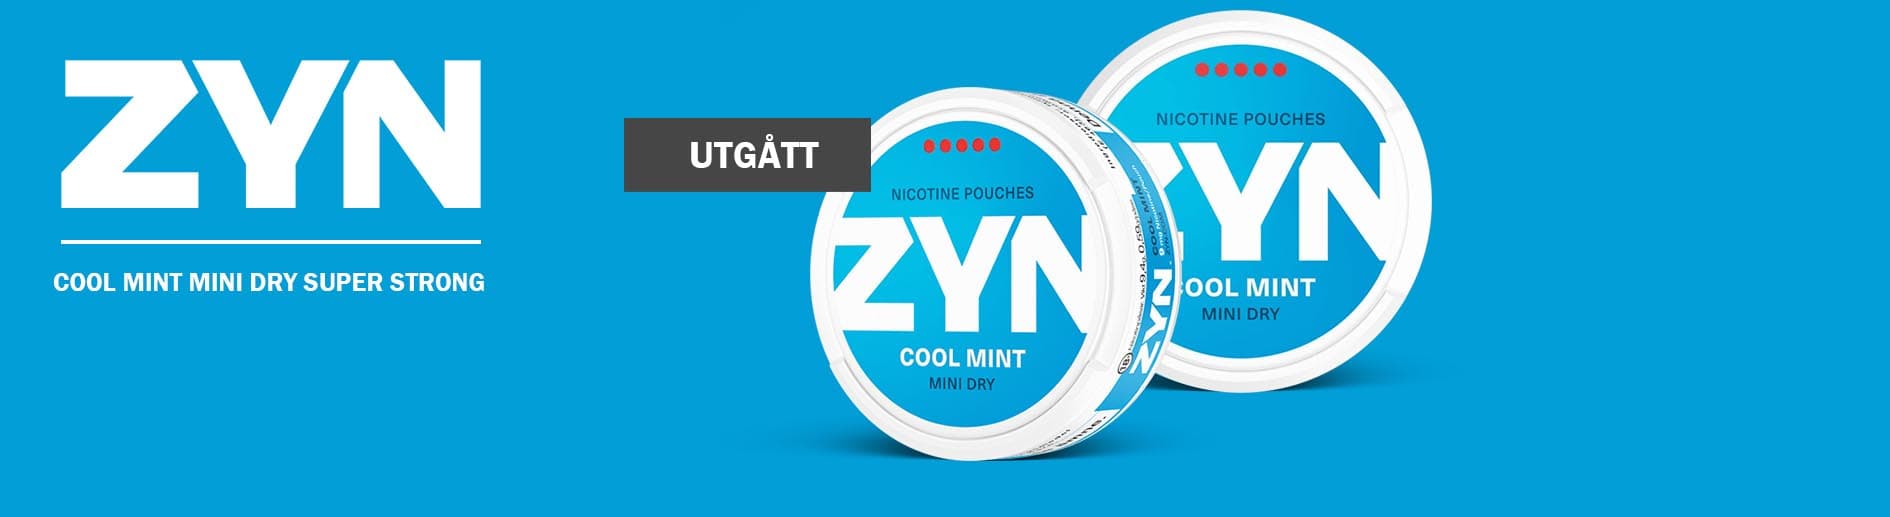 ZYN Cool Mint Mini Dry Super Strong har utgått